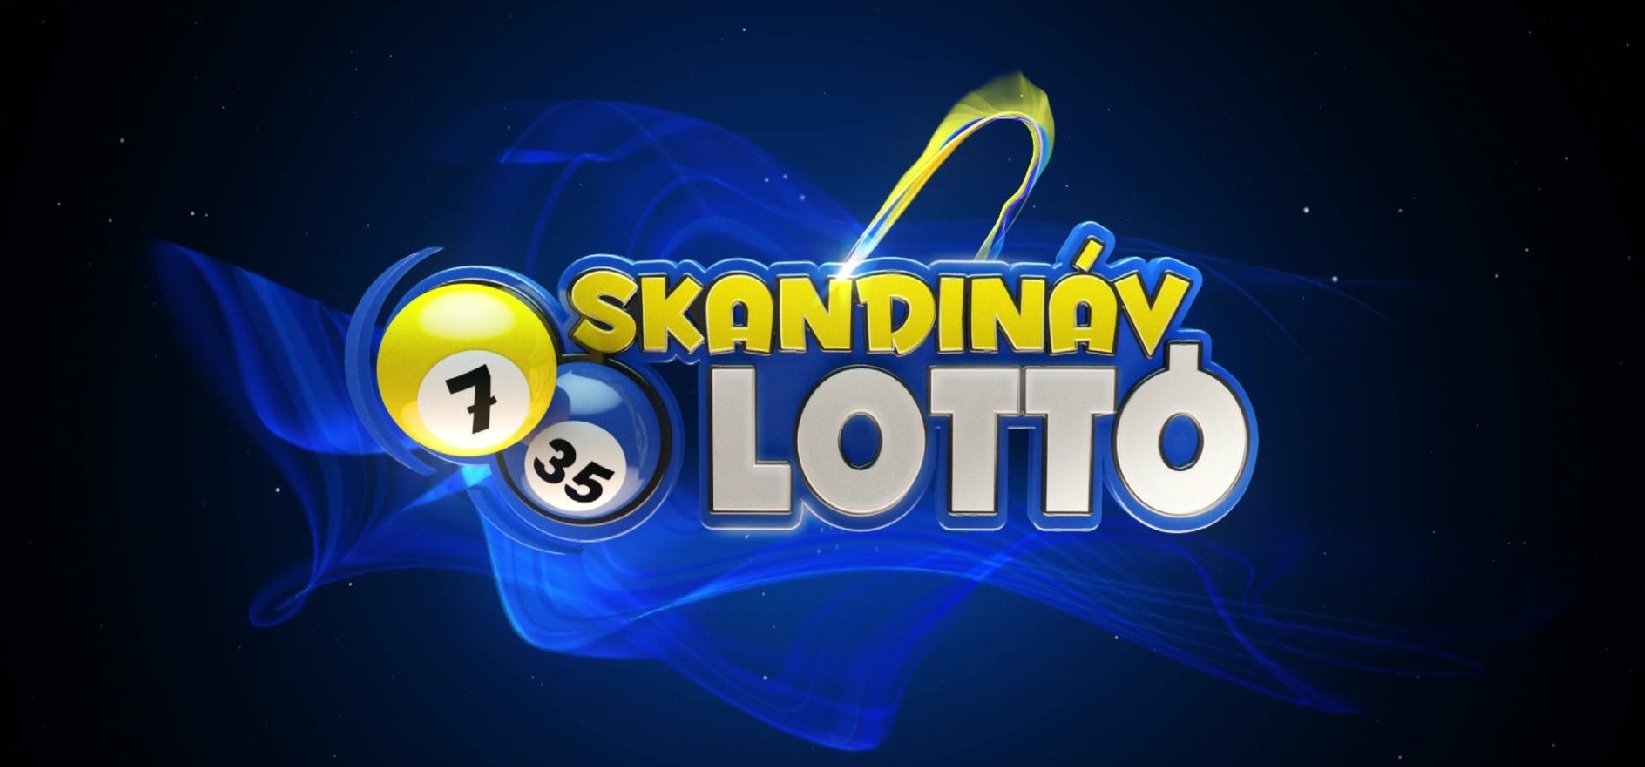 Vajon van friss milliomosa a Skandináv lottónak? Lássuk a nyerőszámokat!